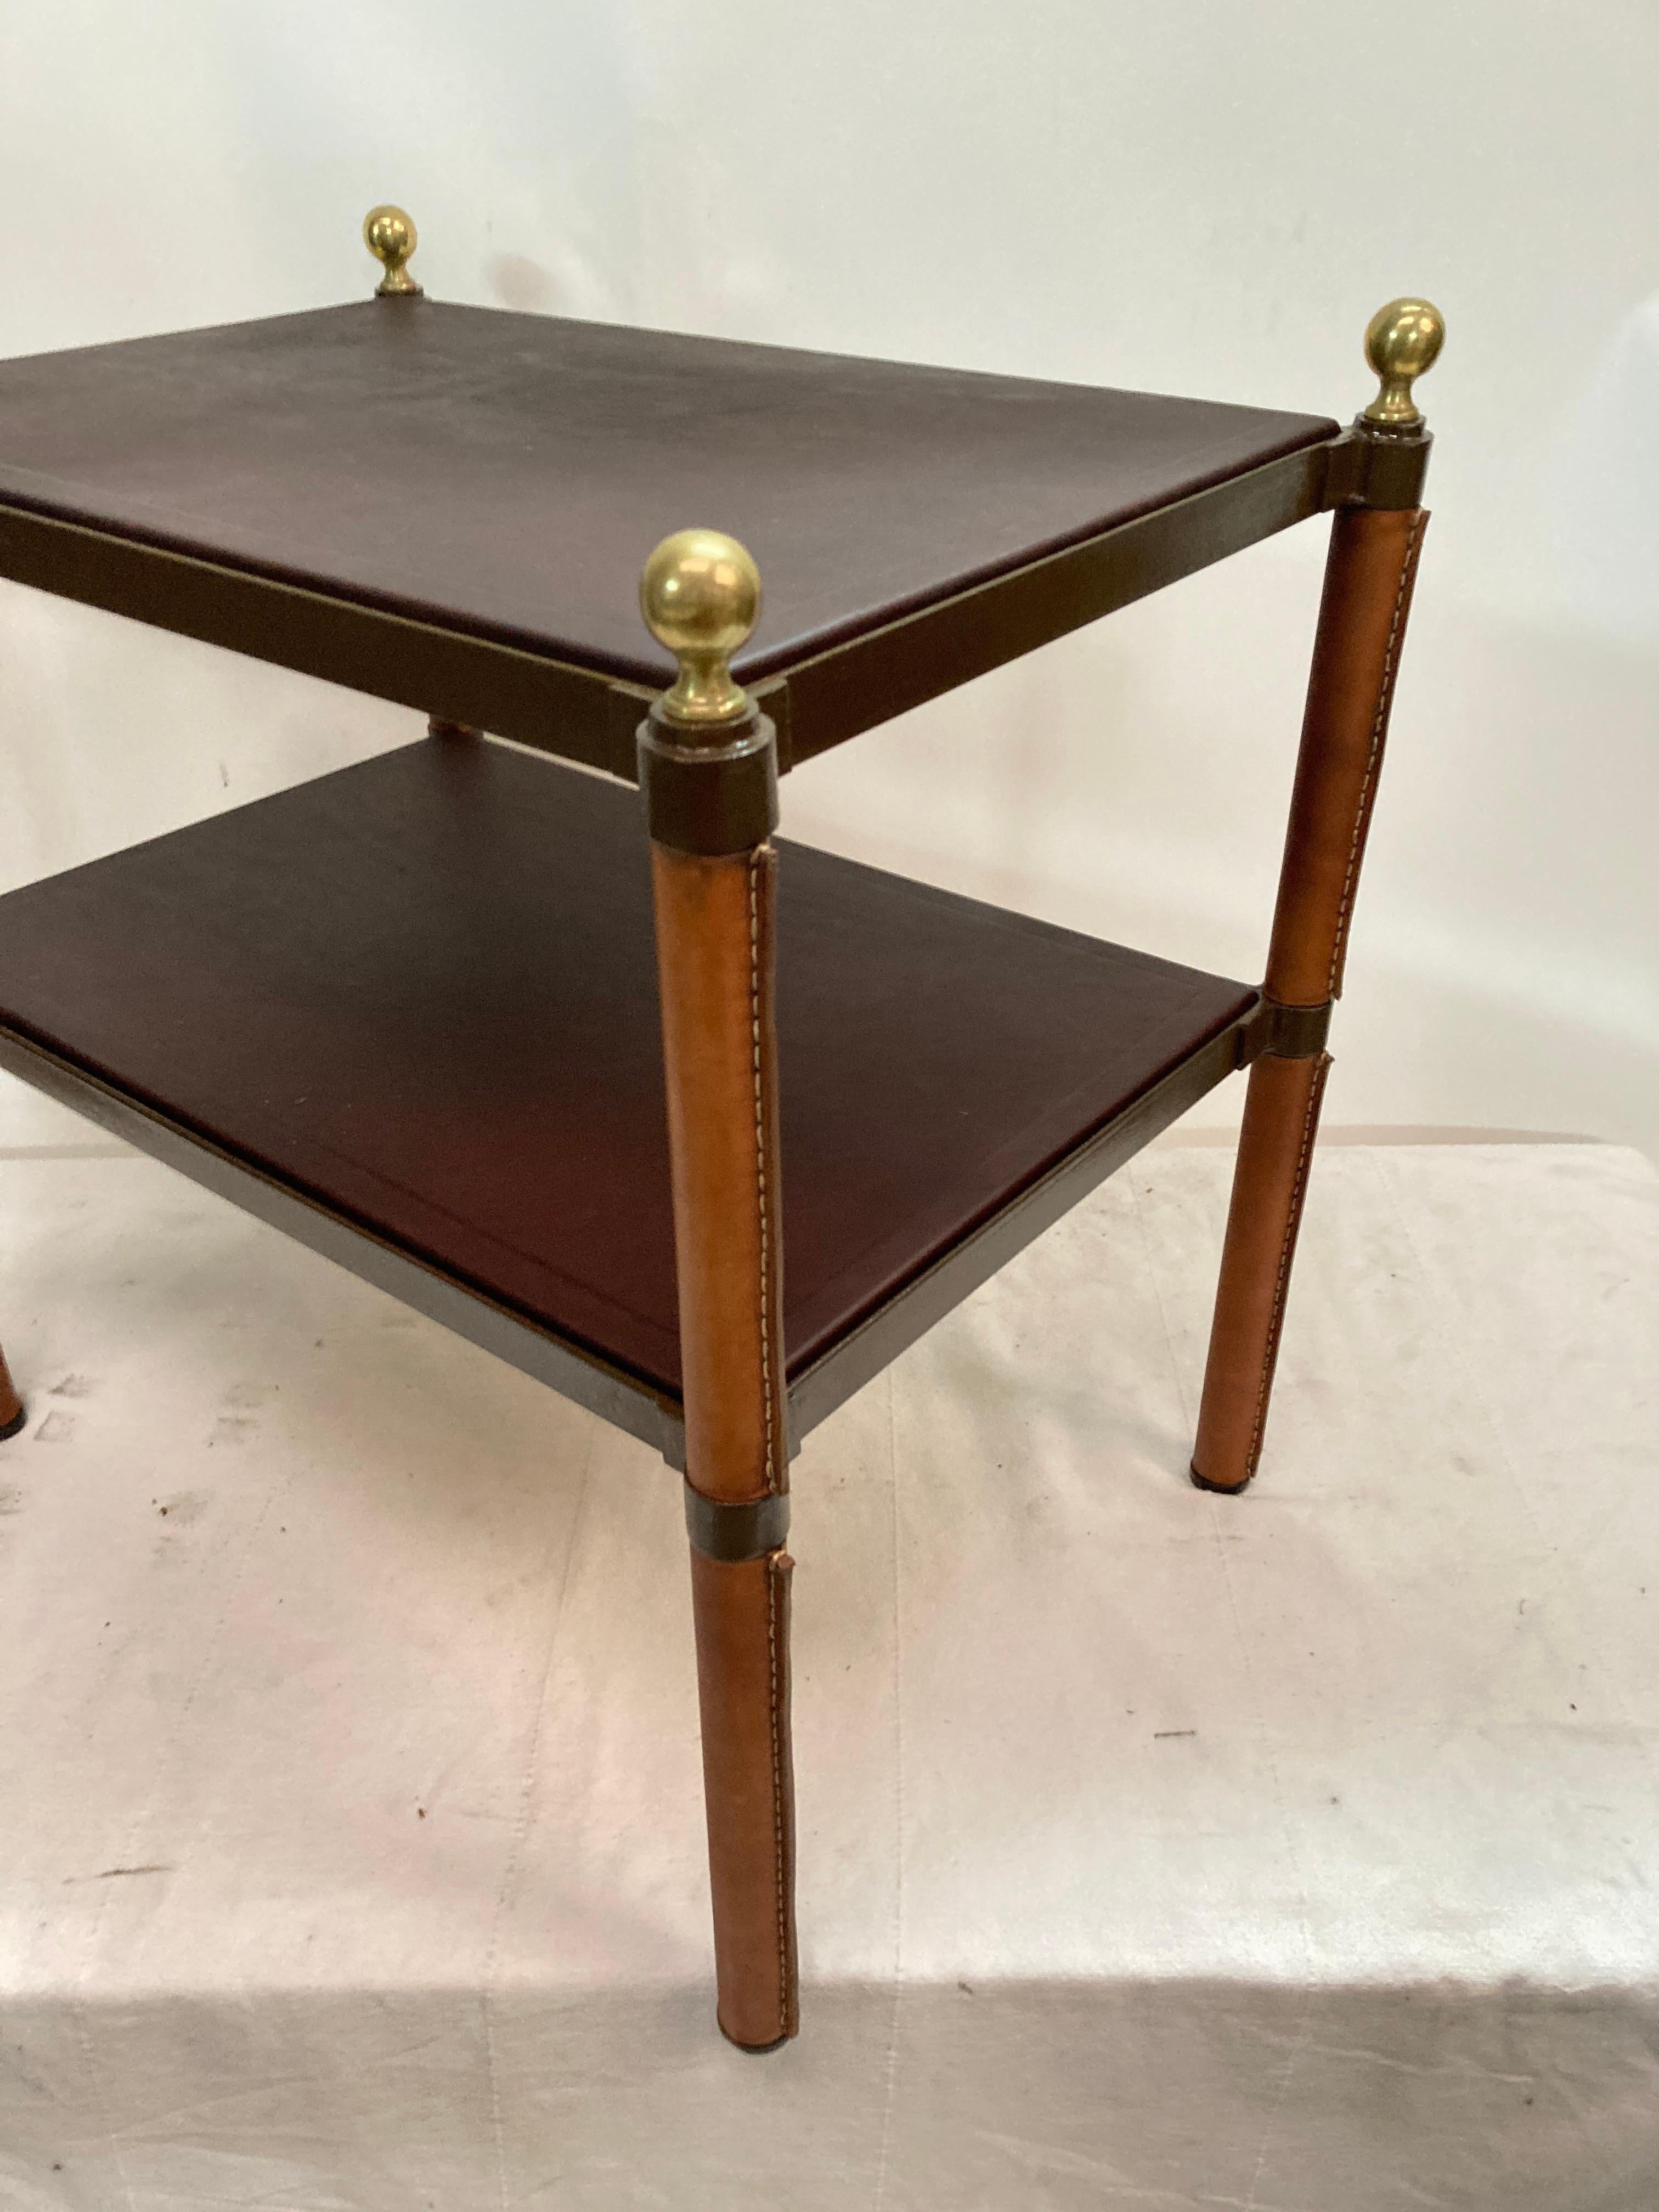 Paire de tables d'appoint en cuir surpiqué des années 1950.
2 niveaux recouverts de cuir chocolat 
Boules de bronze à chaque coin
Grood condition